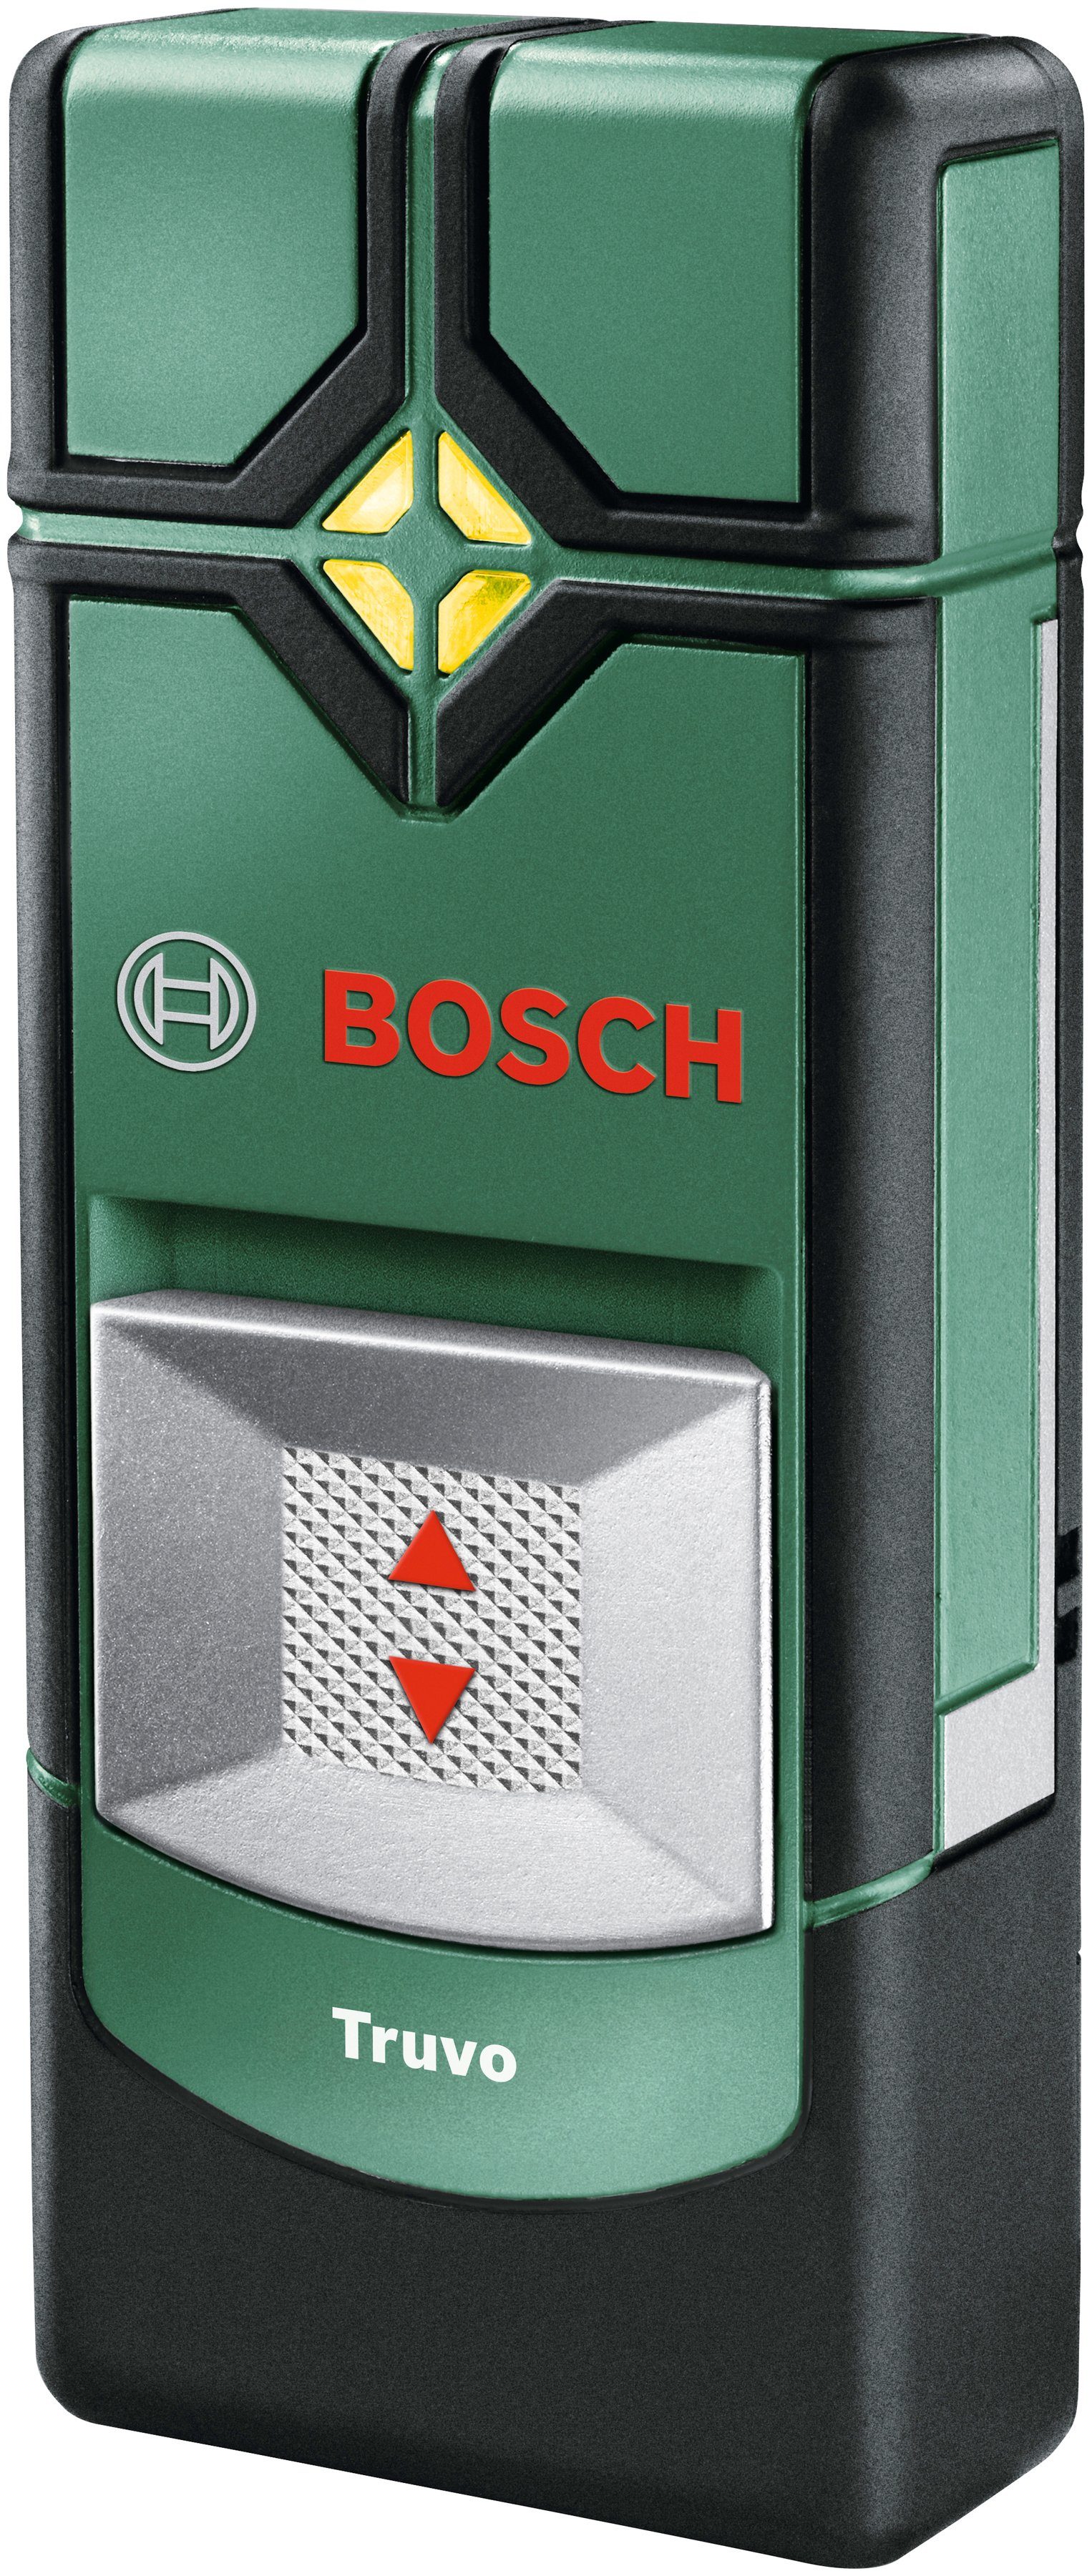 Bosch Home & und Garden Metalle Leitungen stromführende Leitungsortungsgerät Truvo, findet